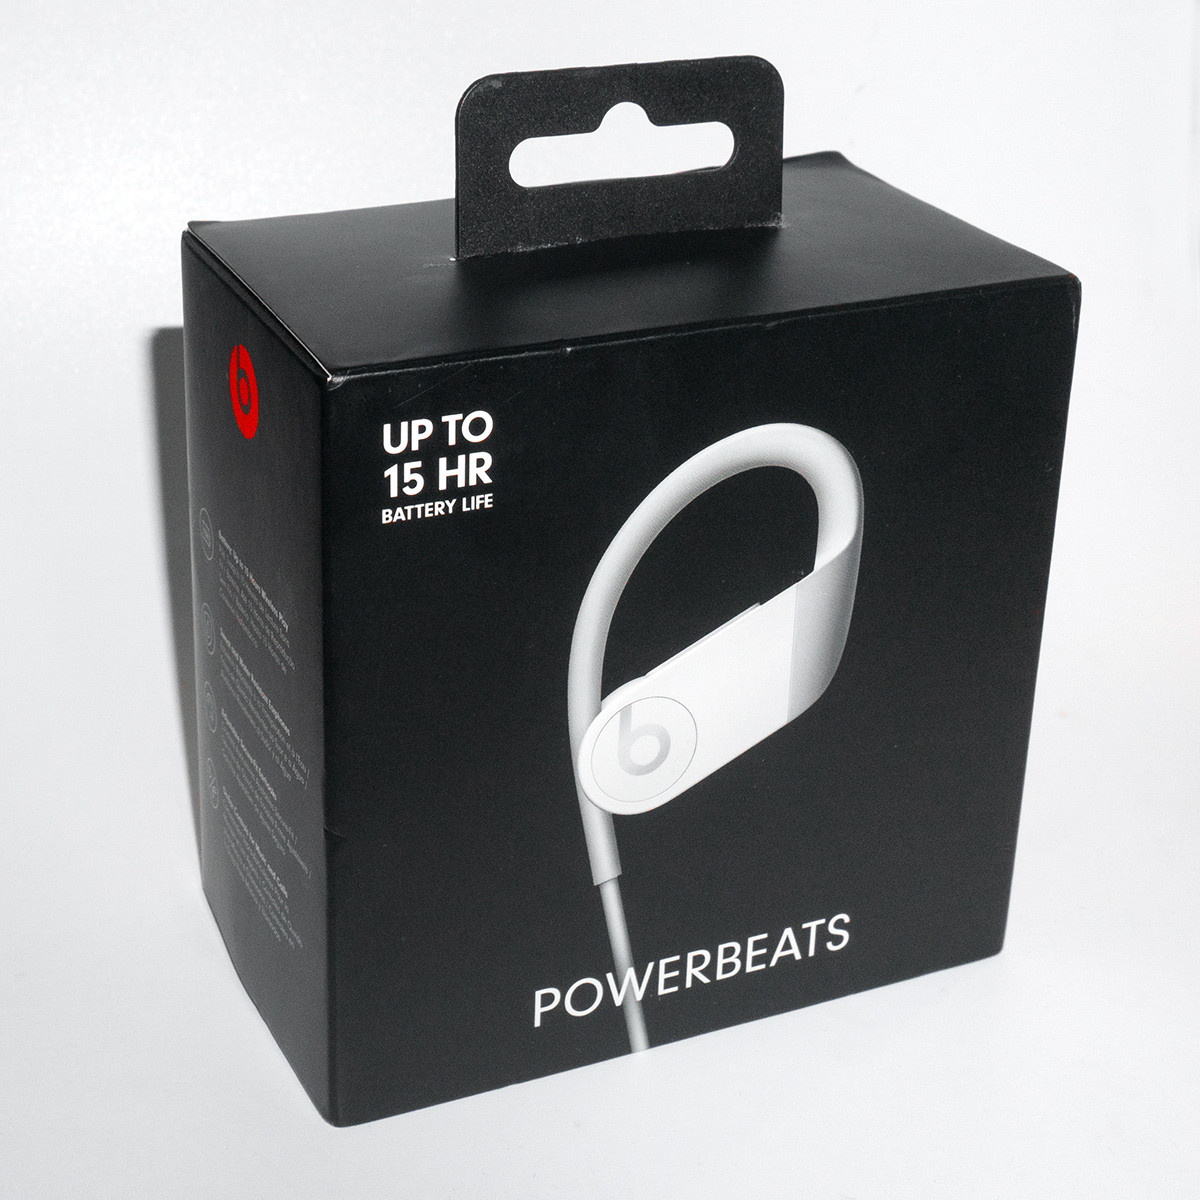 Beats by Dr. Dre Powerbeats White беспроводные наушники Bluetooth внутриканальные, Оригинал Apple